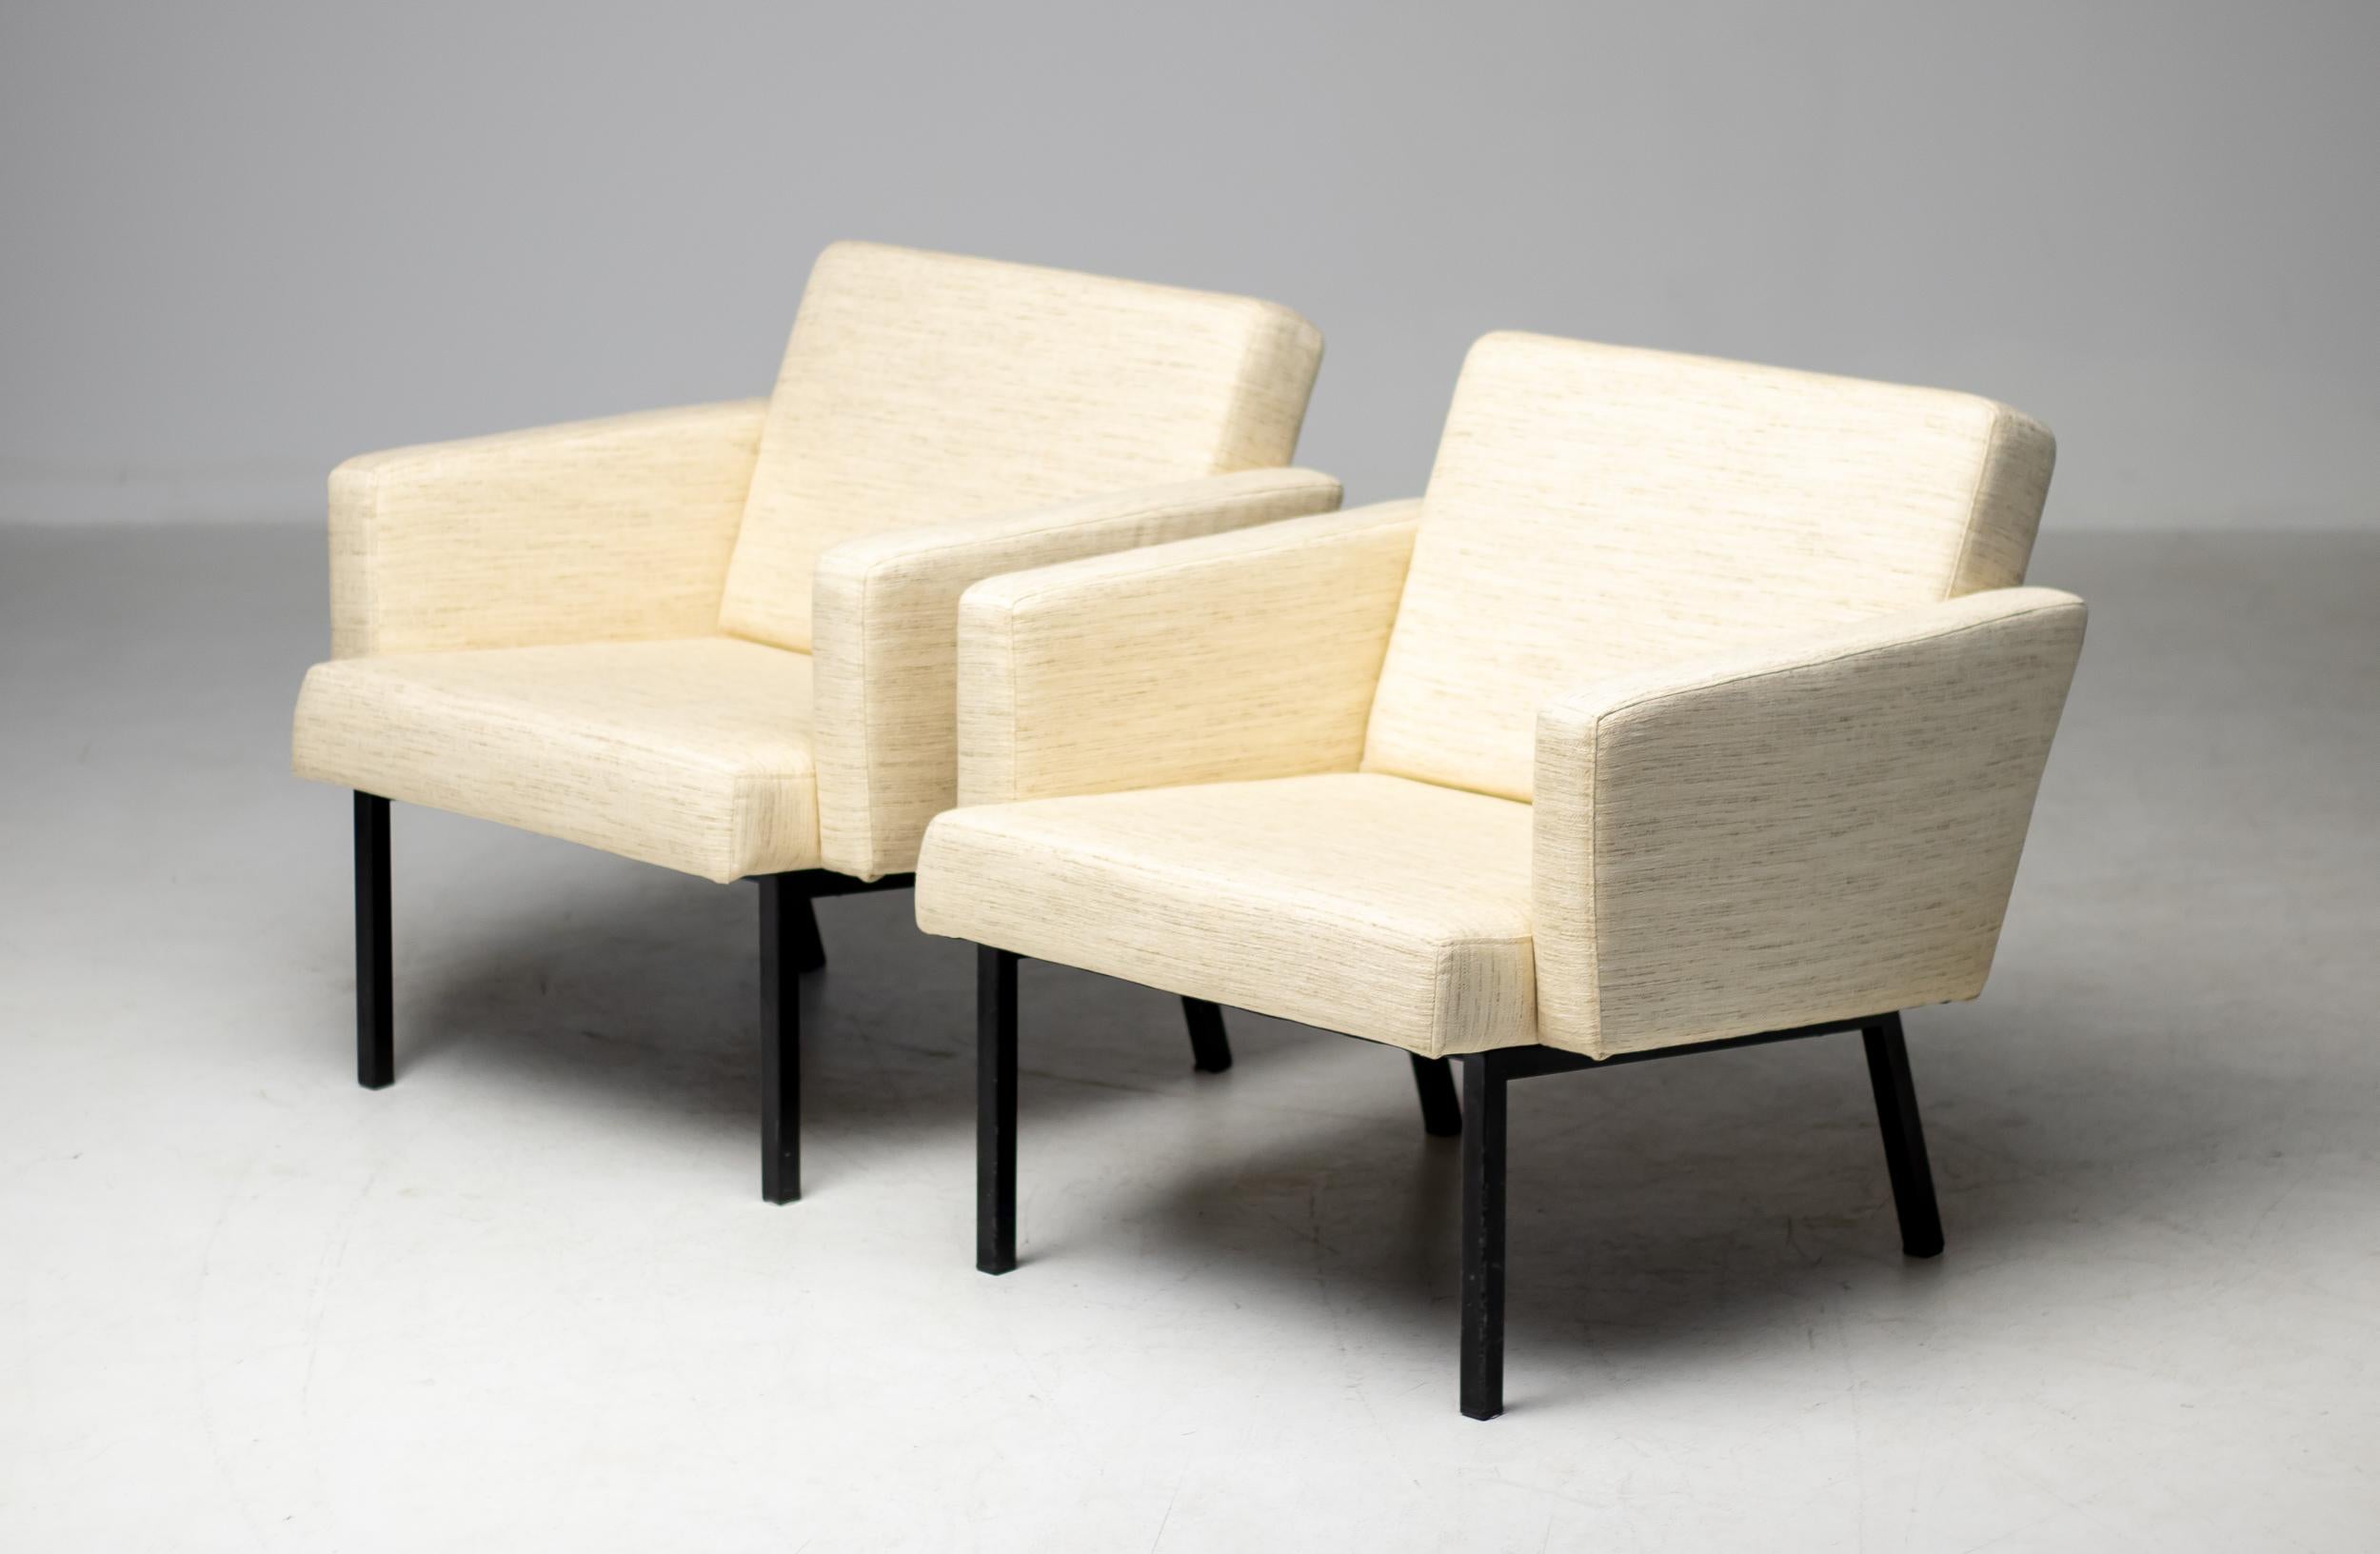 Rares fauteuils modernistes conçus en 1964 par le designer néerlandais Martin Visser pour 't Spectrum. 
Il s'agit du modèle SZ48, décrit dans plusieurs brochures et dans le livre 't Spectrum. 
Ils n'ont été produits qu'entre 1964 et 1965 et sont